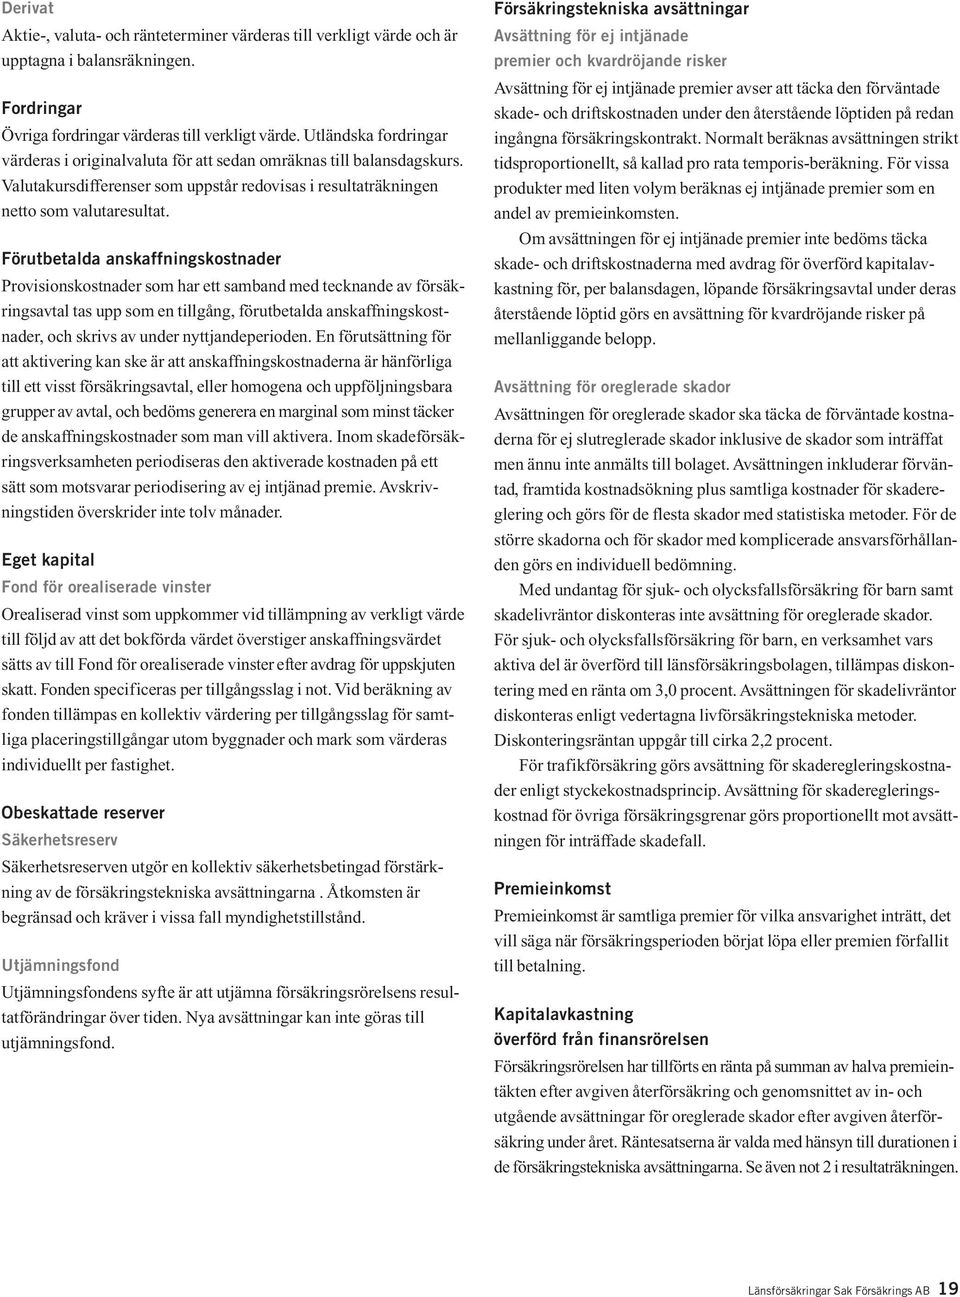 Länsförsäkringar Sak Försäkrings AB ÅRSREDOVISNING - PDF Gratis 